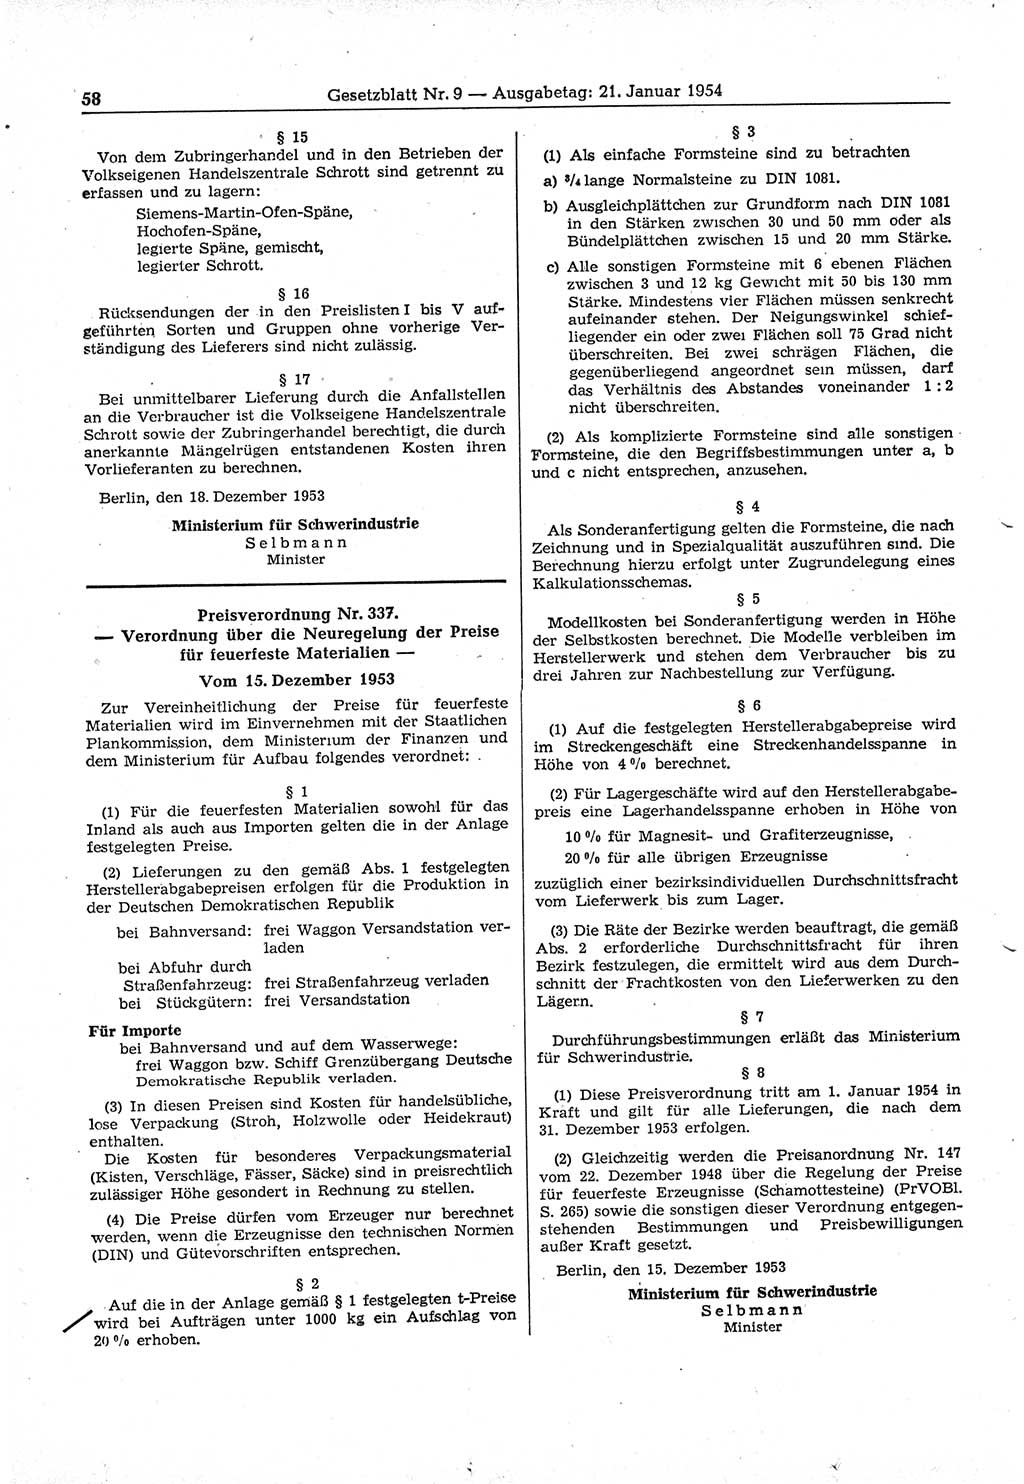 Gesetzblatt (GBl.) der Deutschen Demokratischen Republik (DDR) 1954, Seite 58 (GBl. DDR 1954, S. 58)